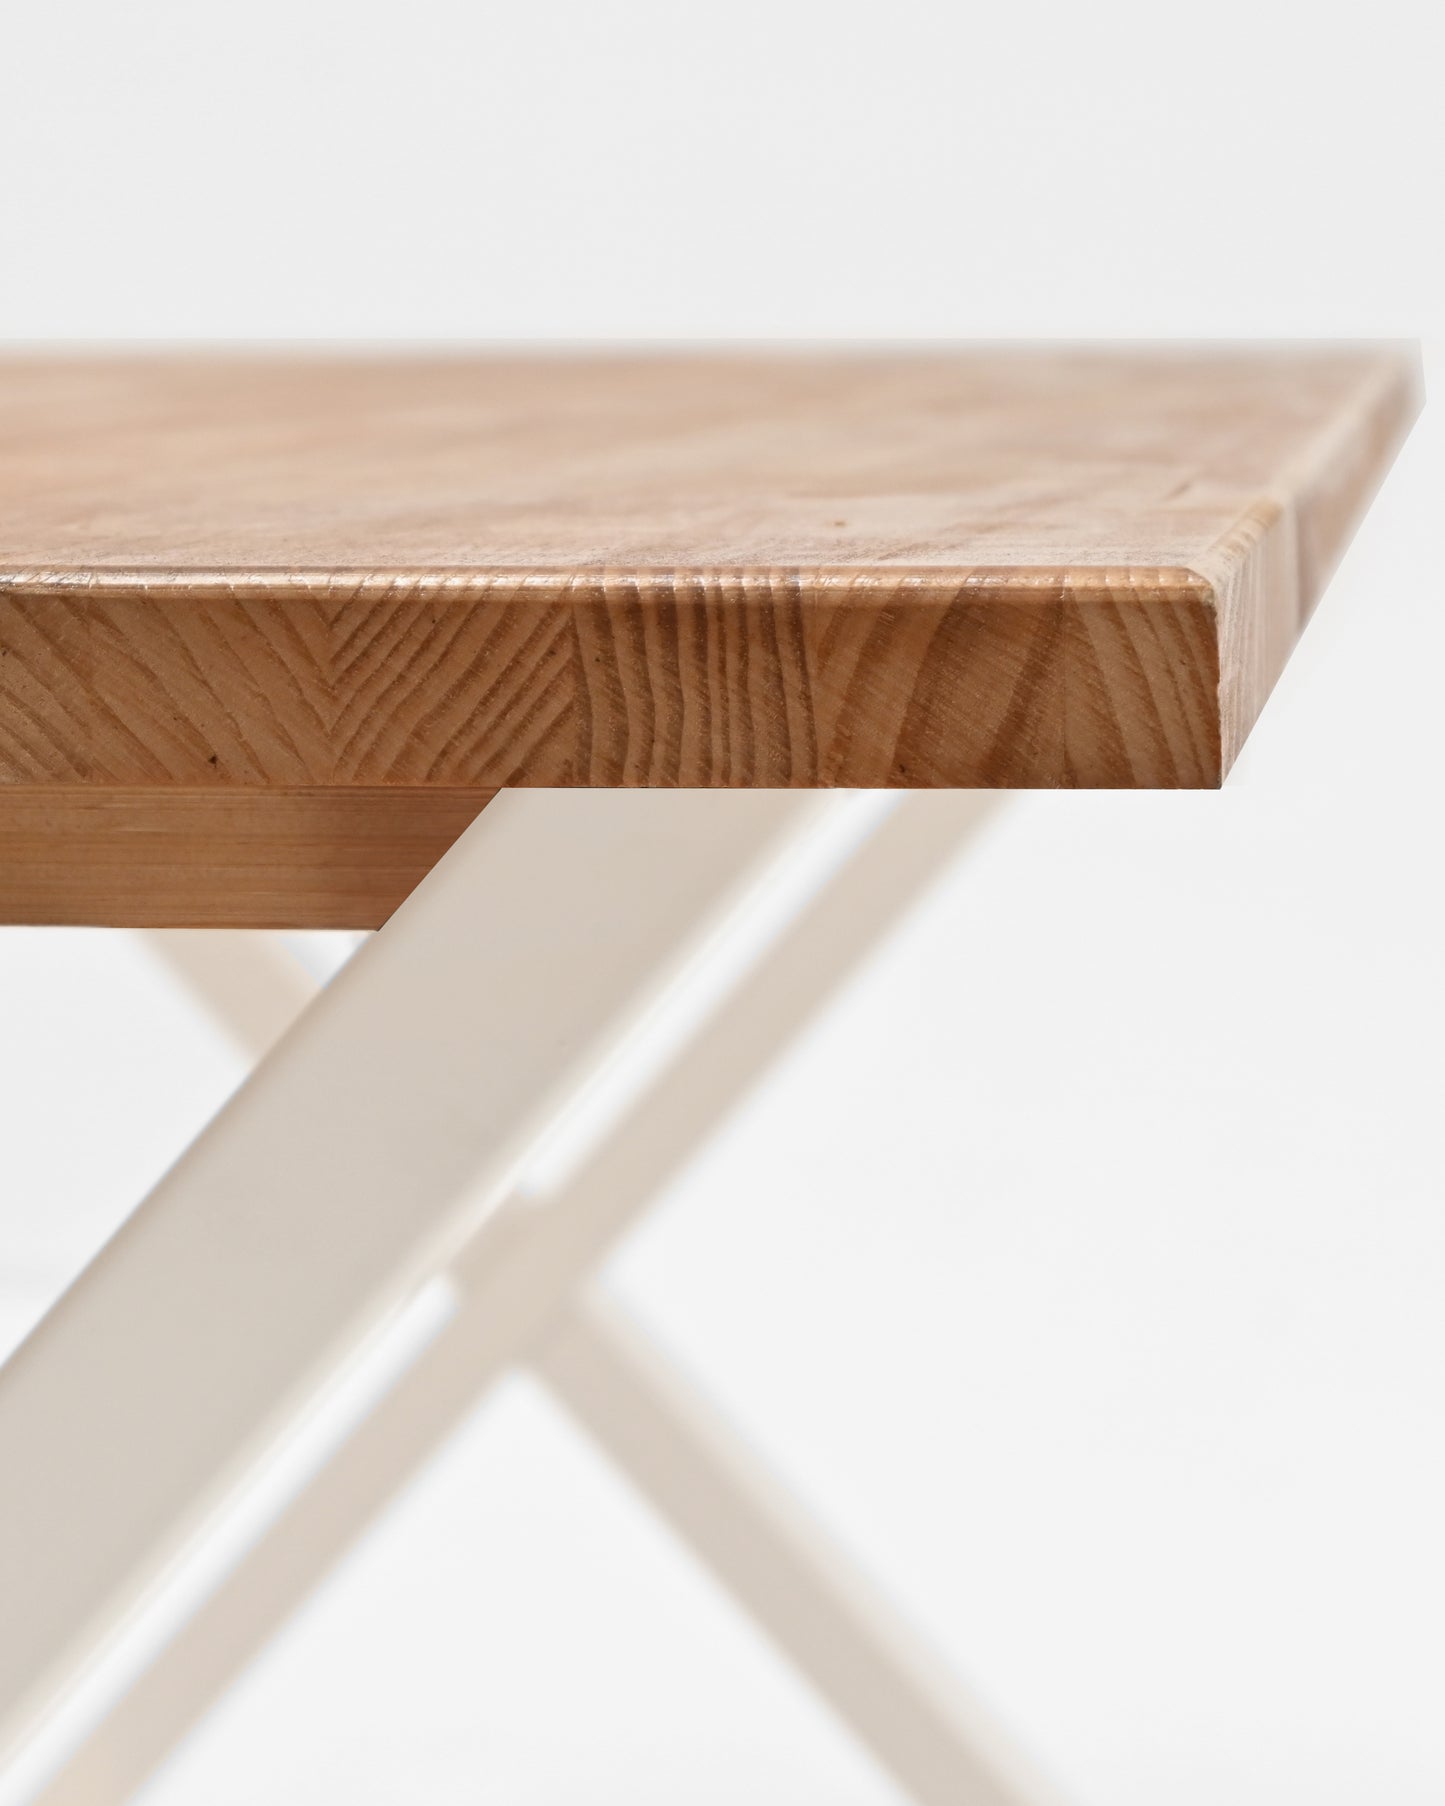 Mesa de comedor de madera maciza roble oscuro patas blancas 160x80cm - DECOWOOD